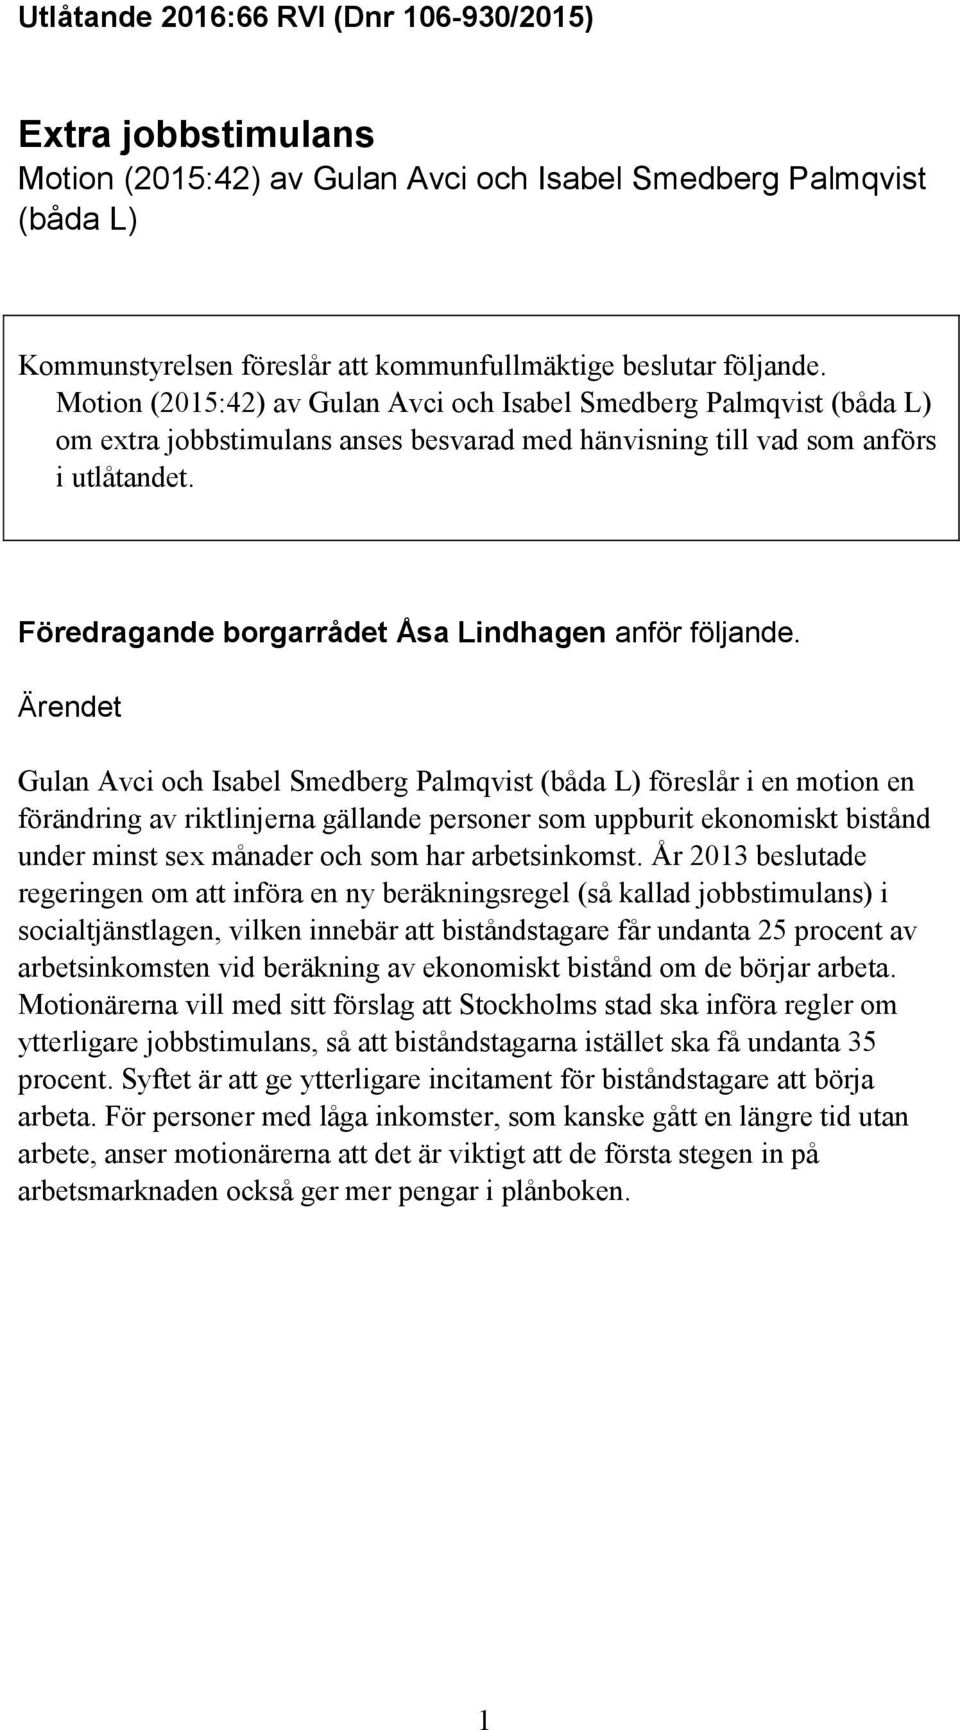 Föredragande borgarrådet Åsa Lindhagen anför följande.